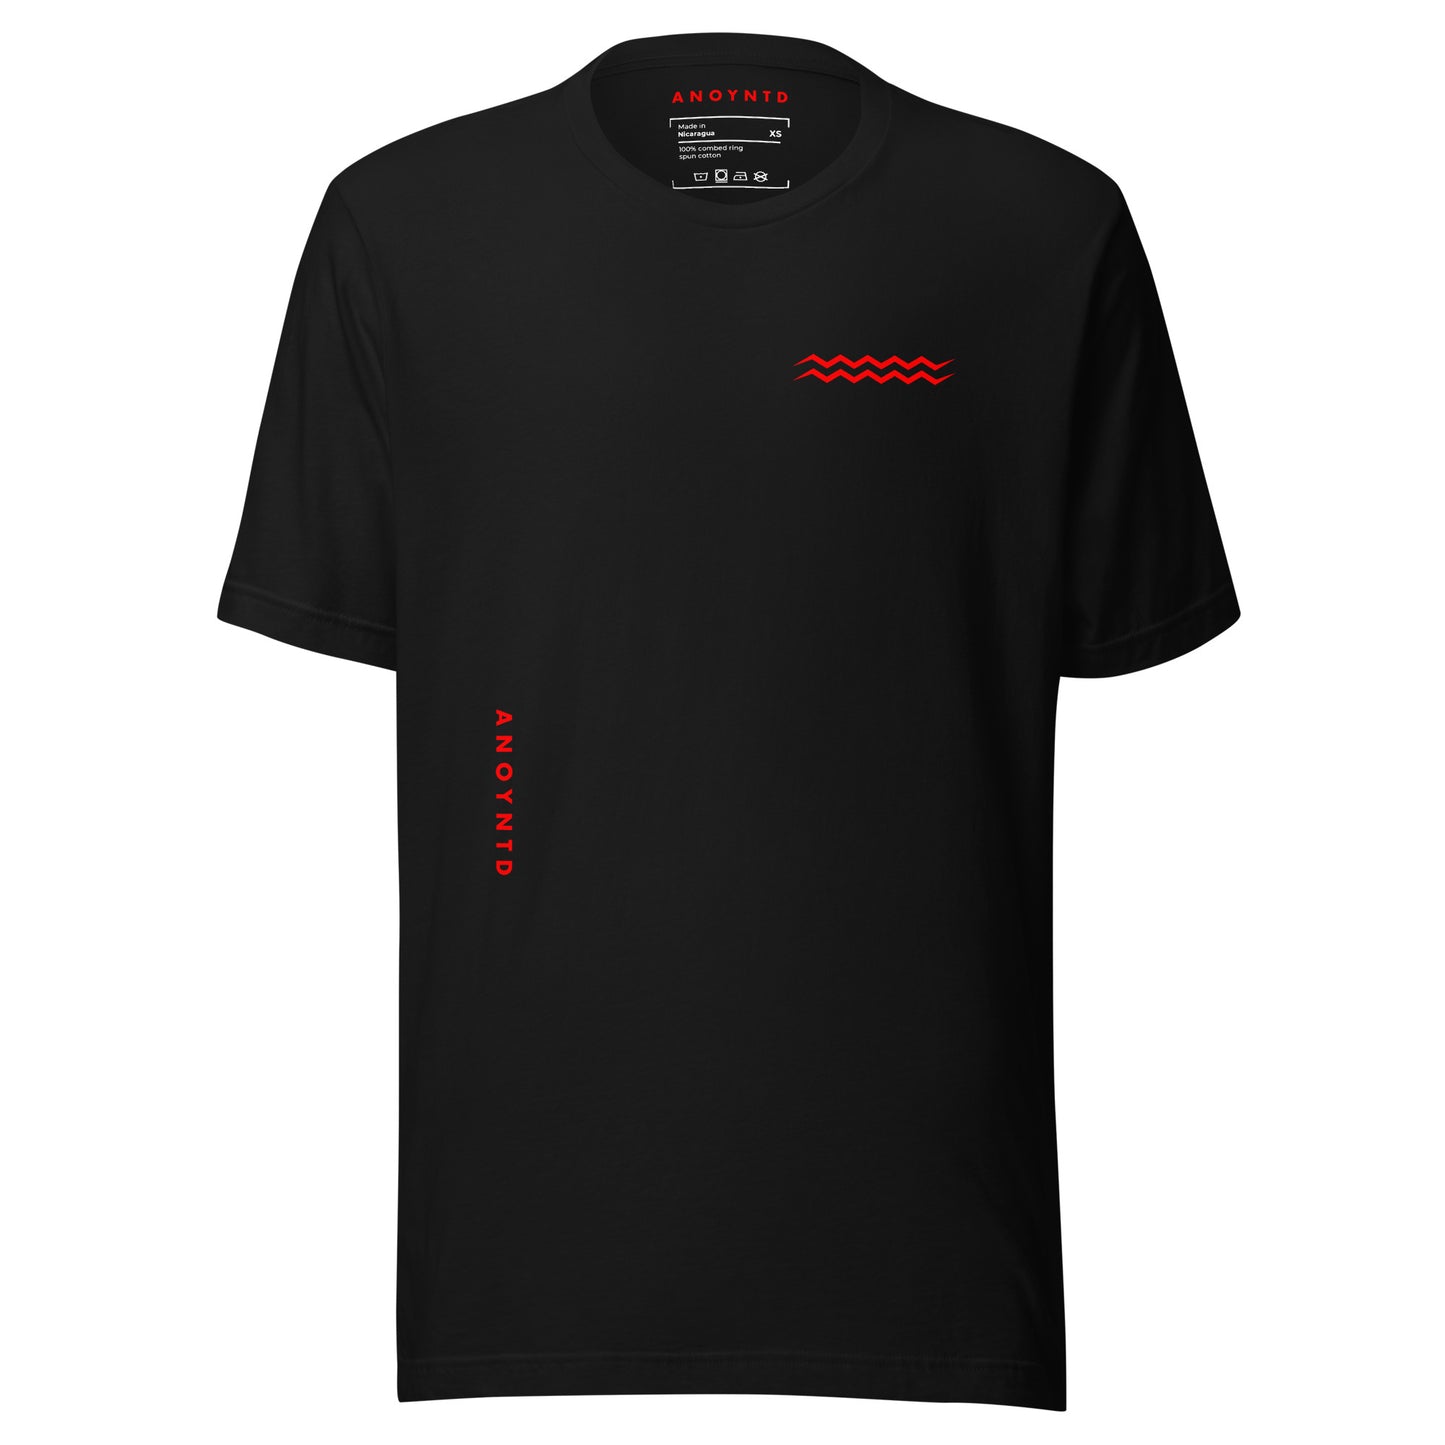 ANOYNTD Horizontal Series (R) Unisex t-shirt